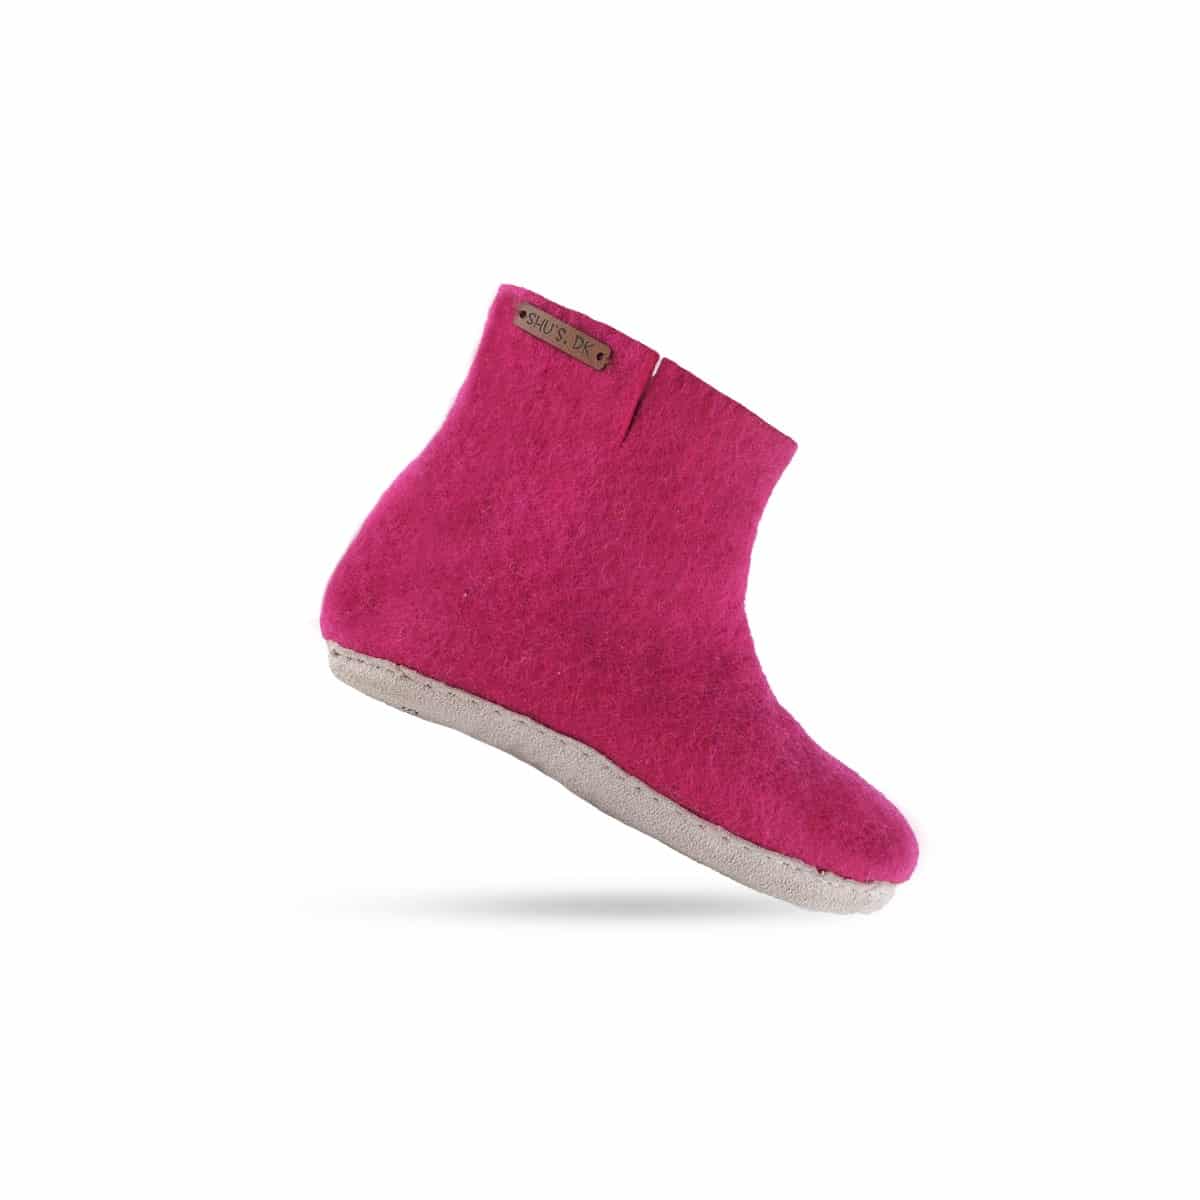 Uldstøvle (100% ren uld) - Model pink m/sål i skind - Dansk Design fra SHUS